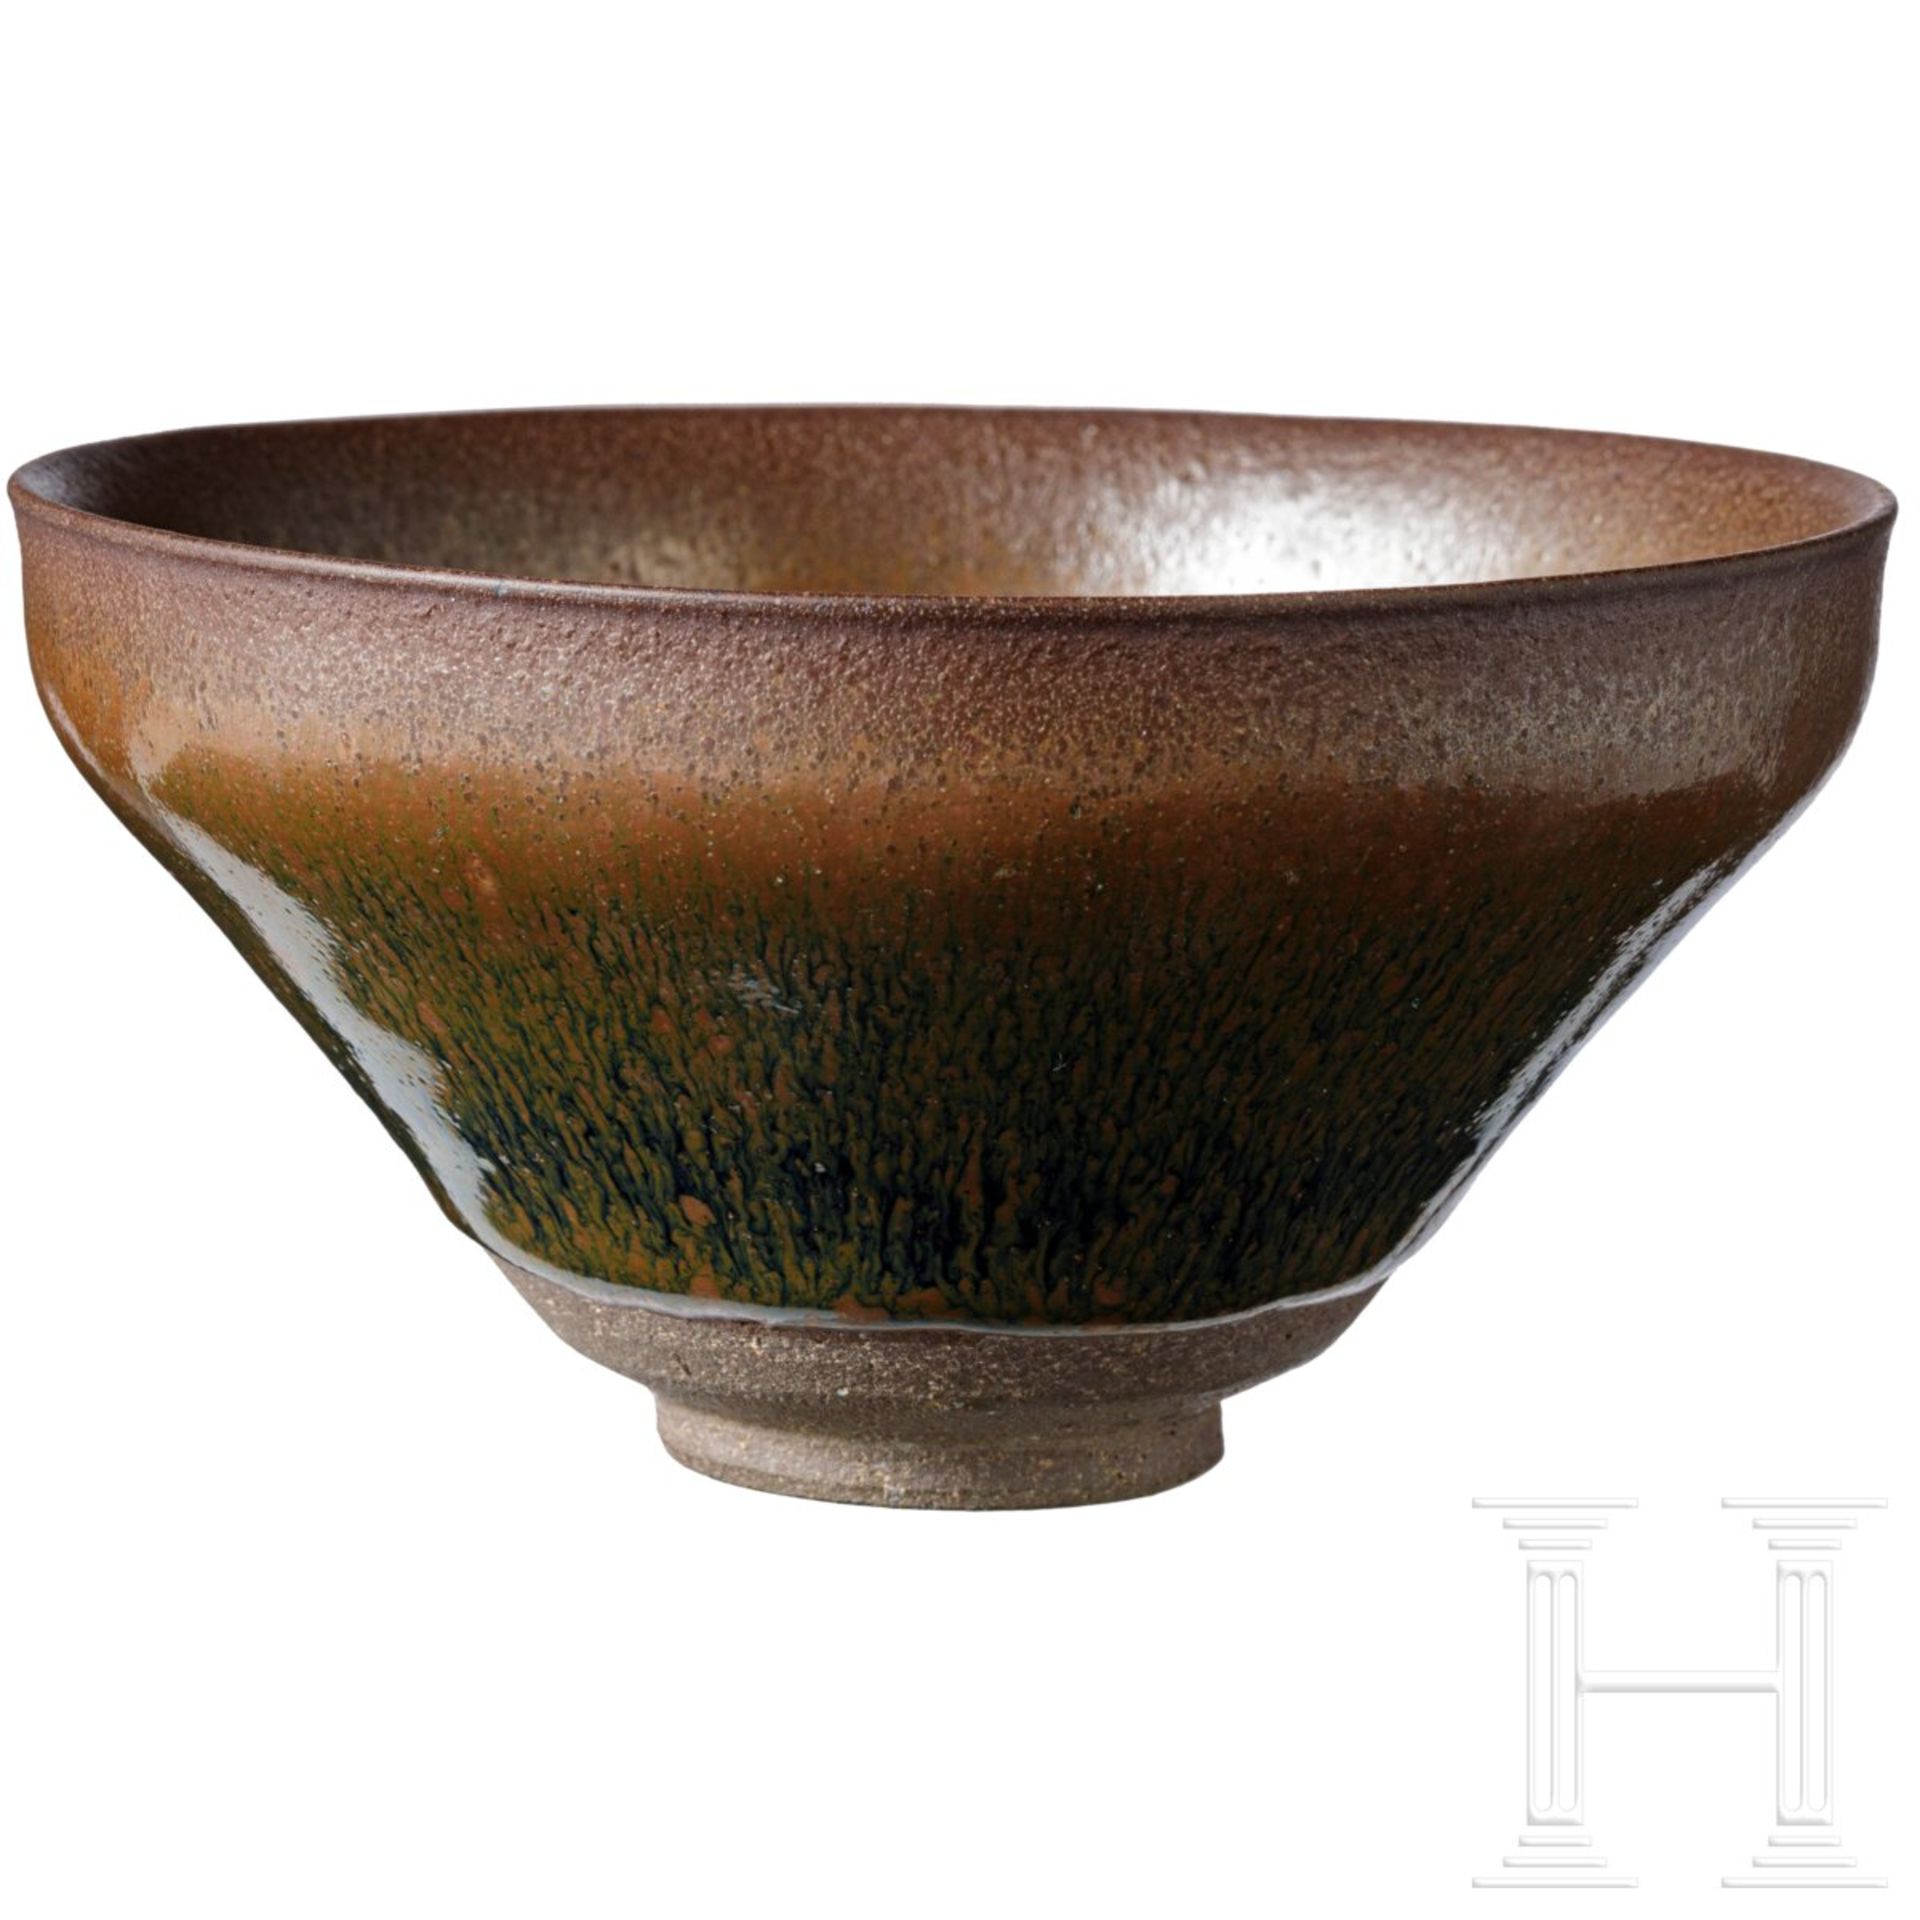 Jianyao-Teeschale mit schwarz-brauner Hasenfell-Glasur, Song-Dynastie (12. - 13. Jhdt.) - Bild 3 aus 19